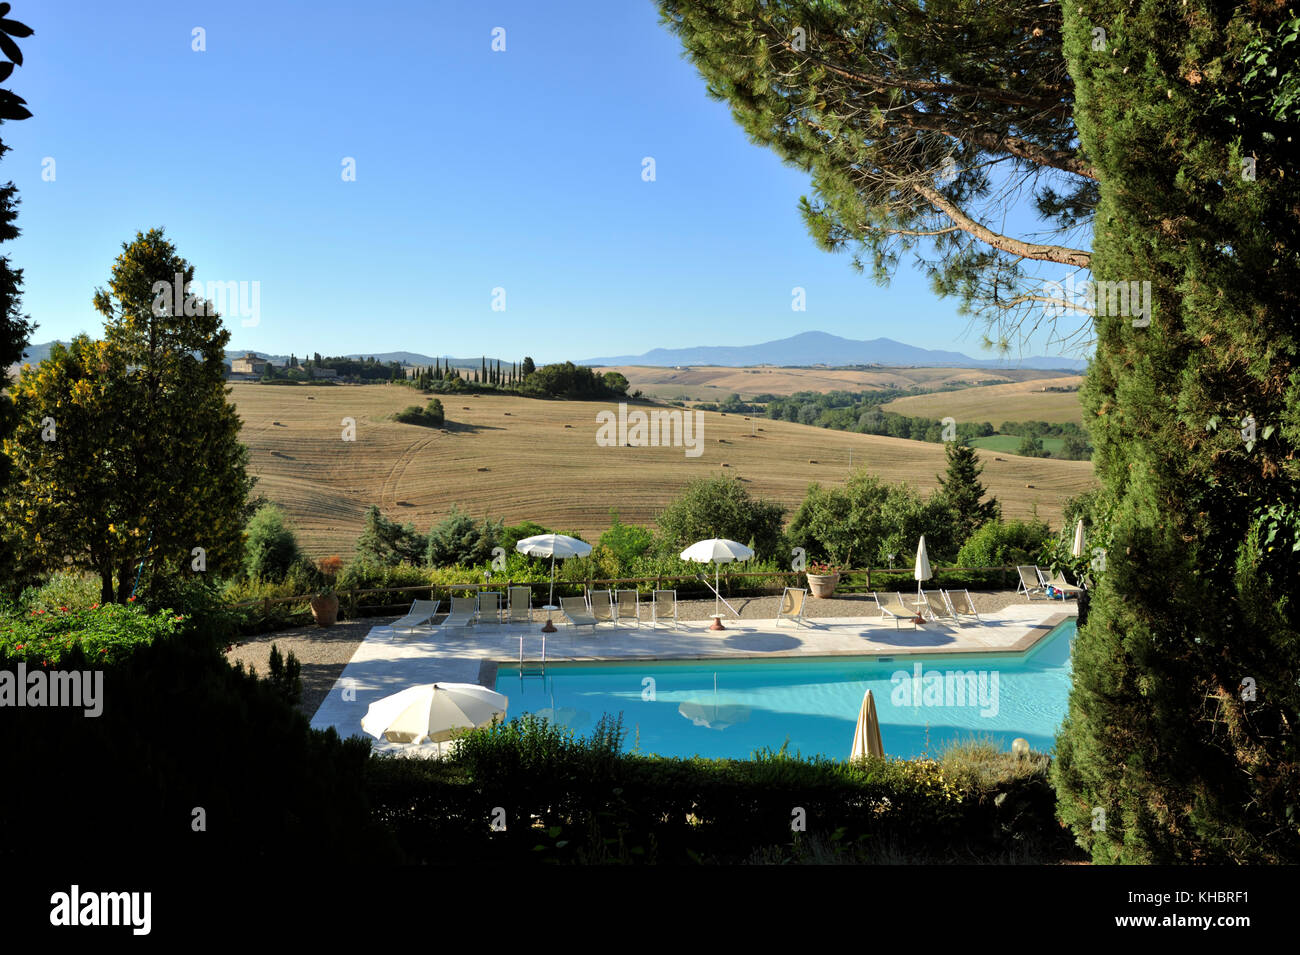 Italy, Tuscany, Crete Senesi, Trequanda, Azienda Pometti, agriturismo La Selva, swimming pool Stock Photo